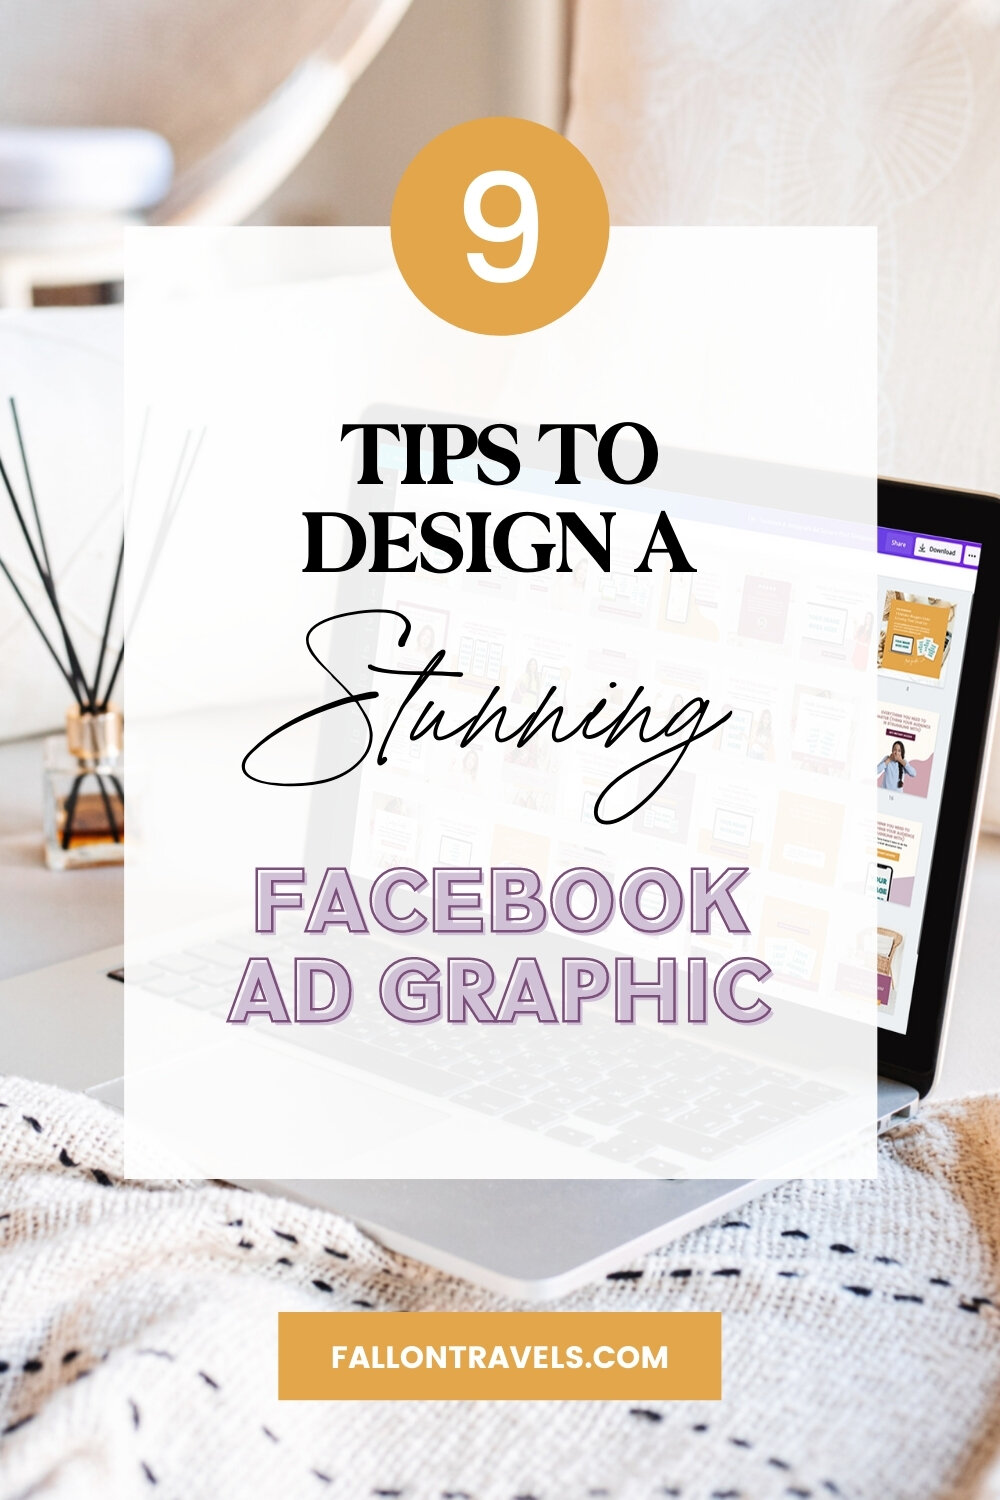 How to Design a Facebook Ad | FallonTravels.com